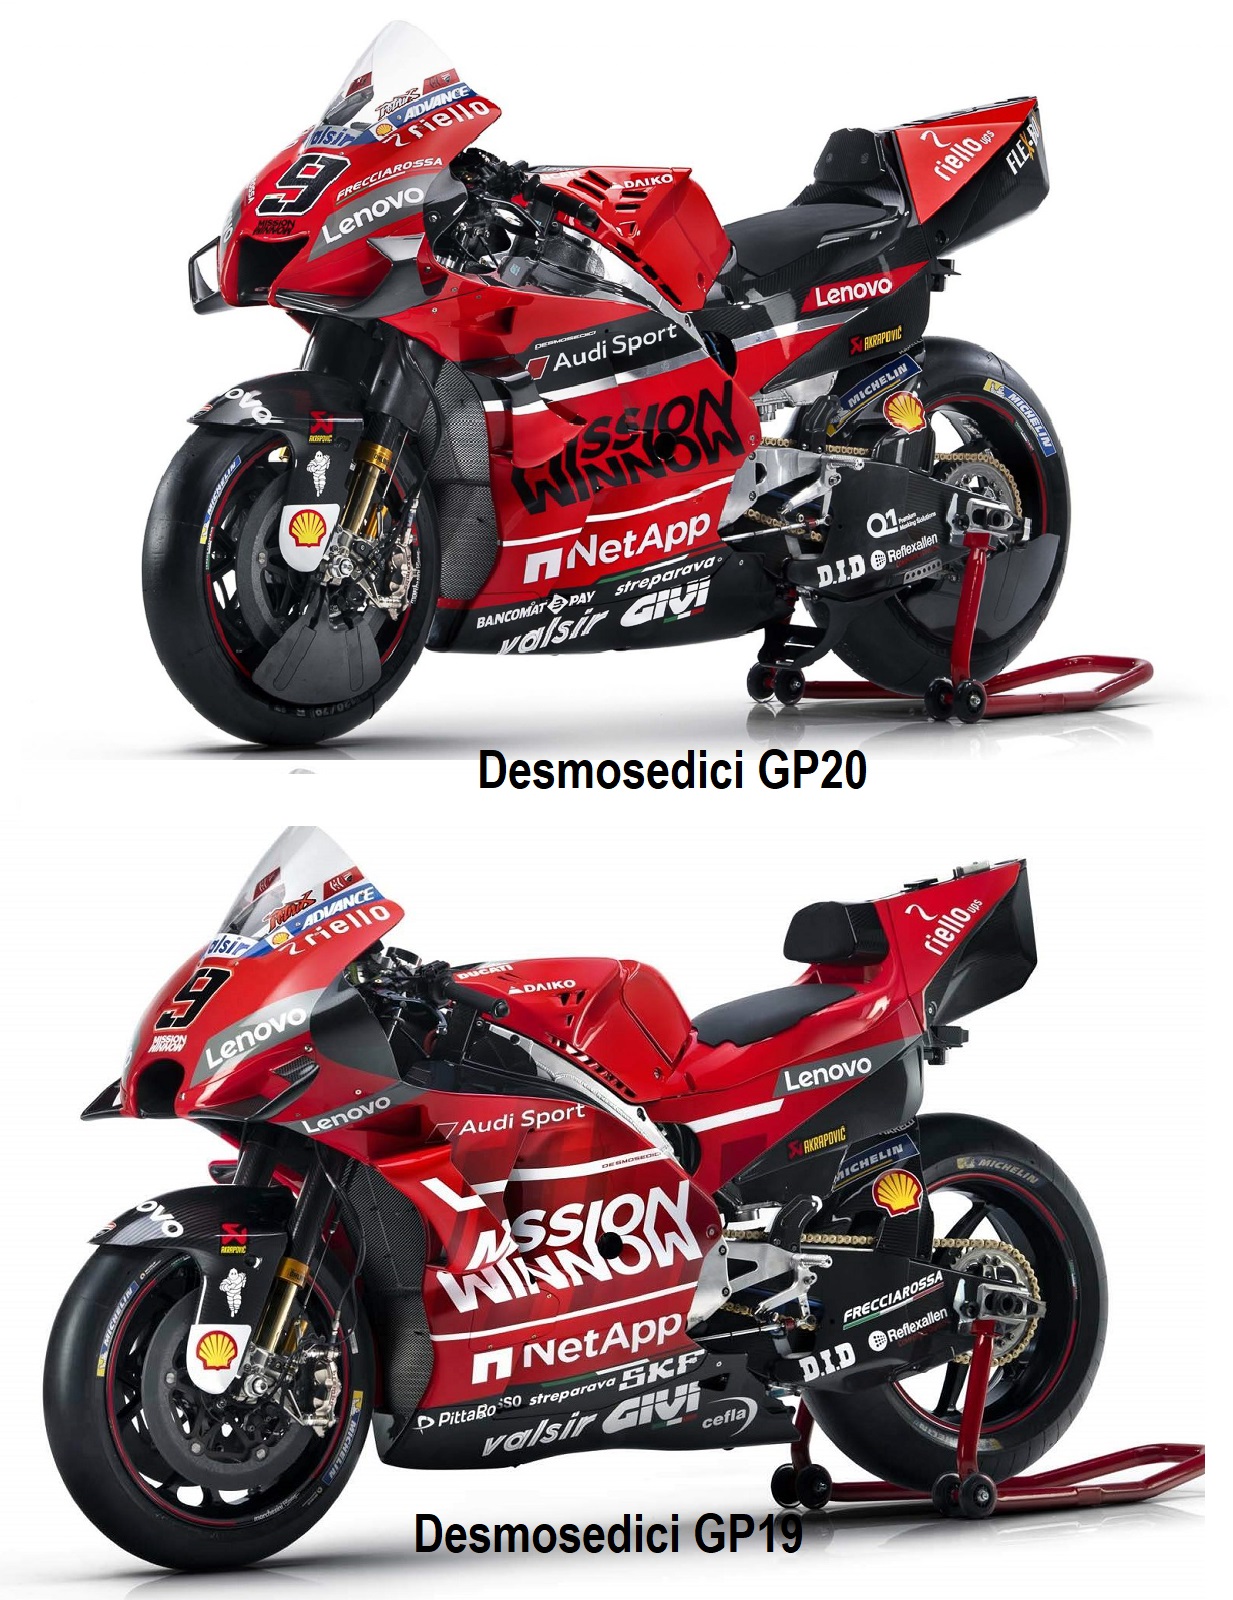 Ducati Desmosedici GP19 vs GP 20 1